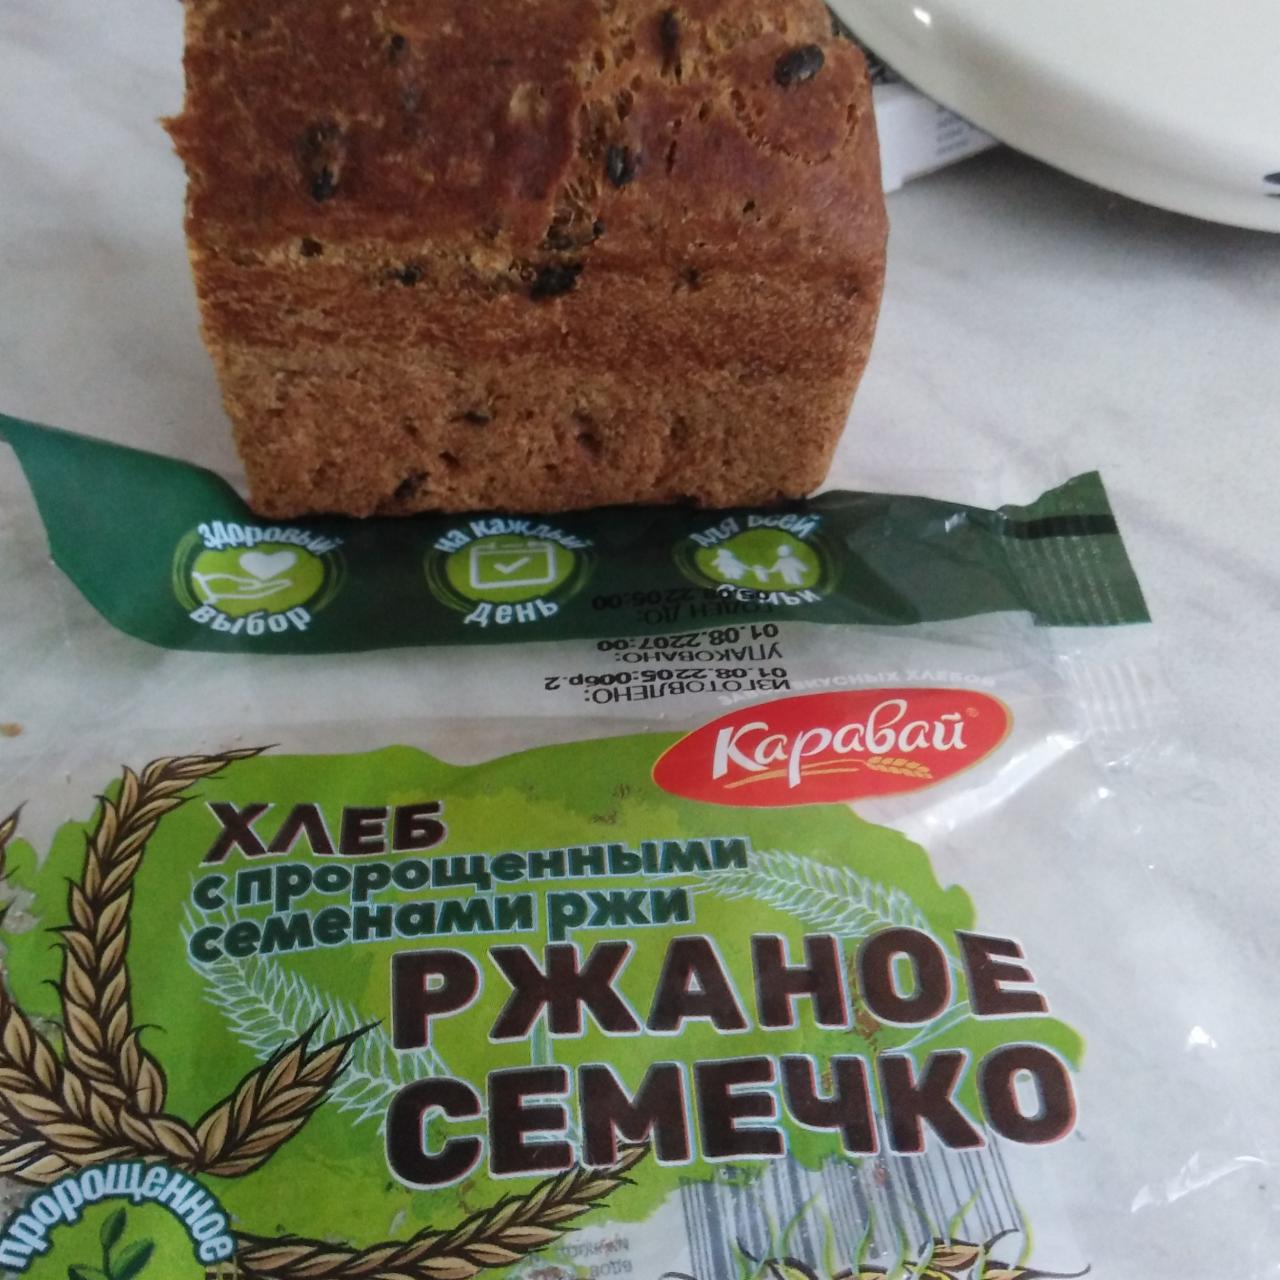 Фото - Хлеб с пророщенными семенами ржи Ржаное семечко Каравай